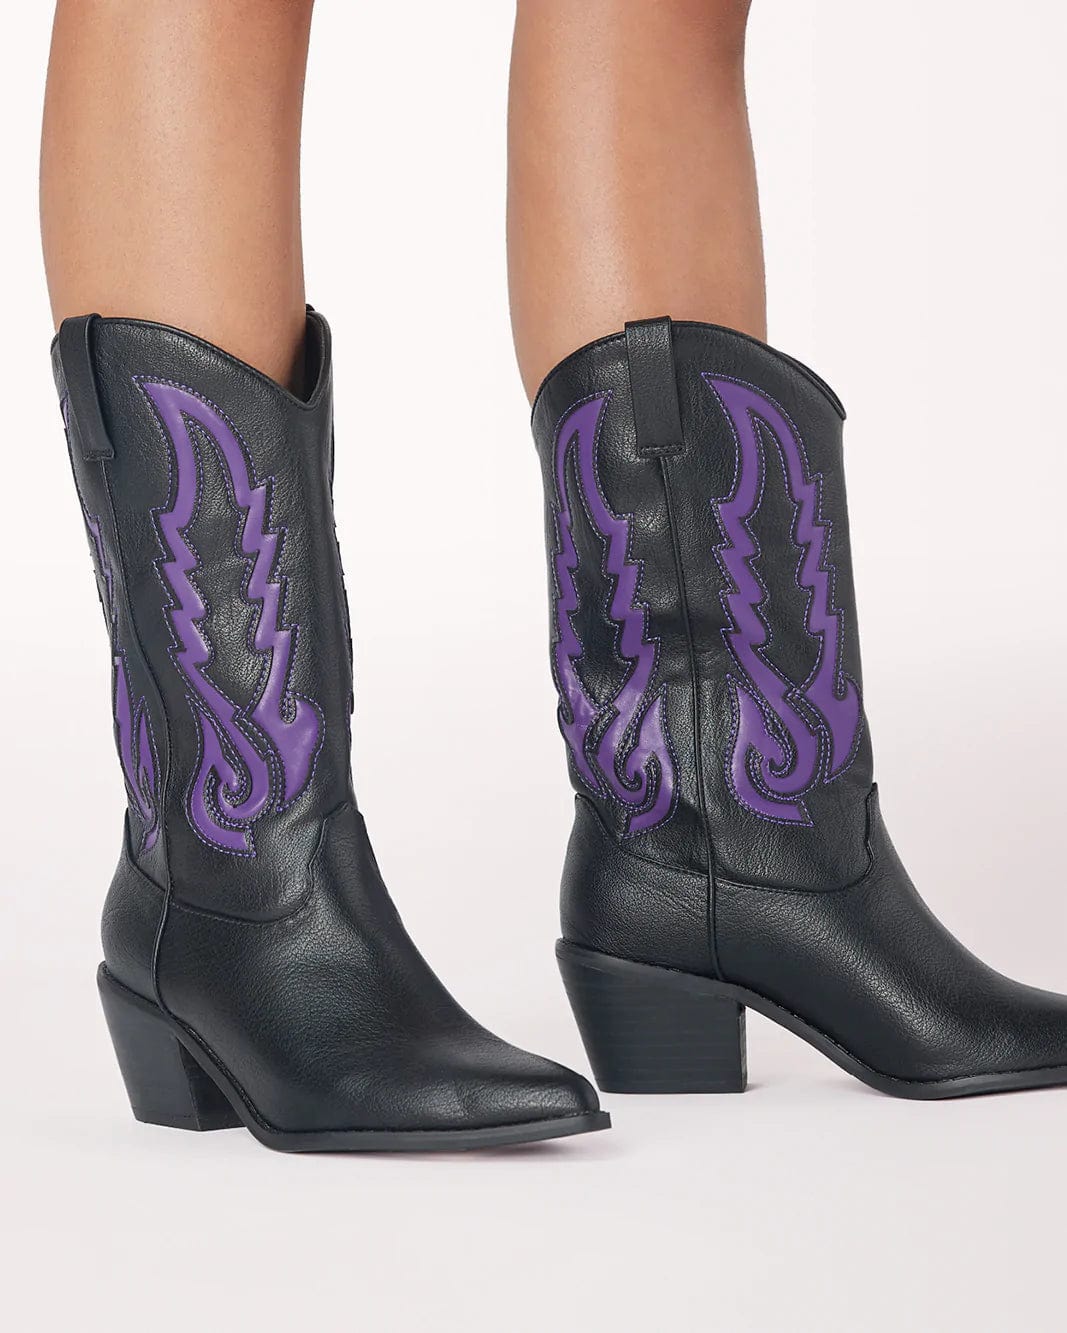 Norva Contrast Cowboy Boots Black/Violet, Shoes by Billini Shoes | LIT Boutique